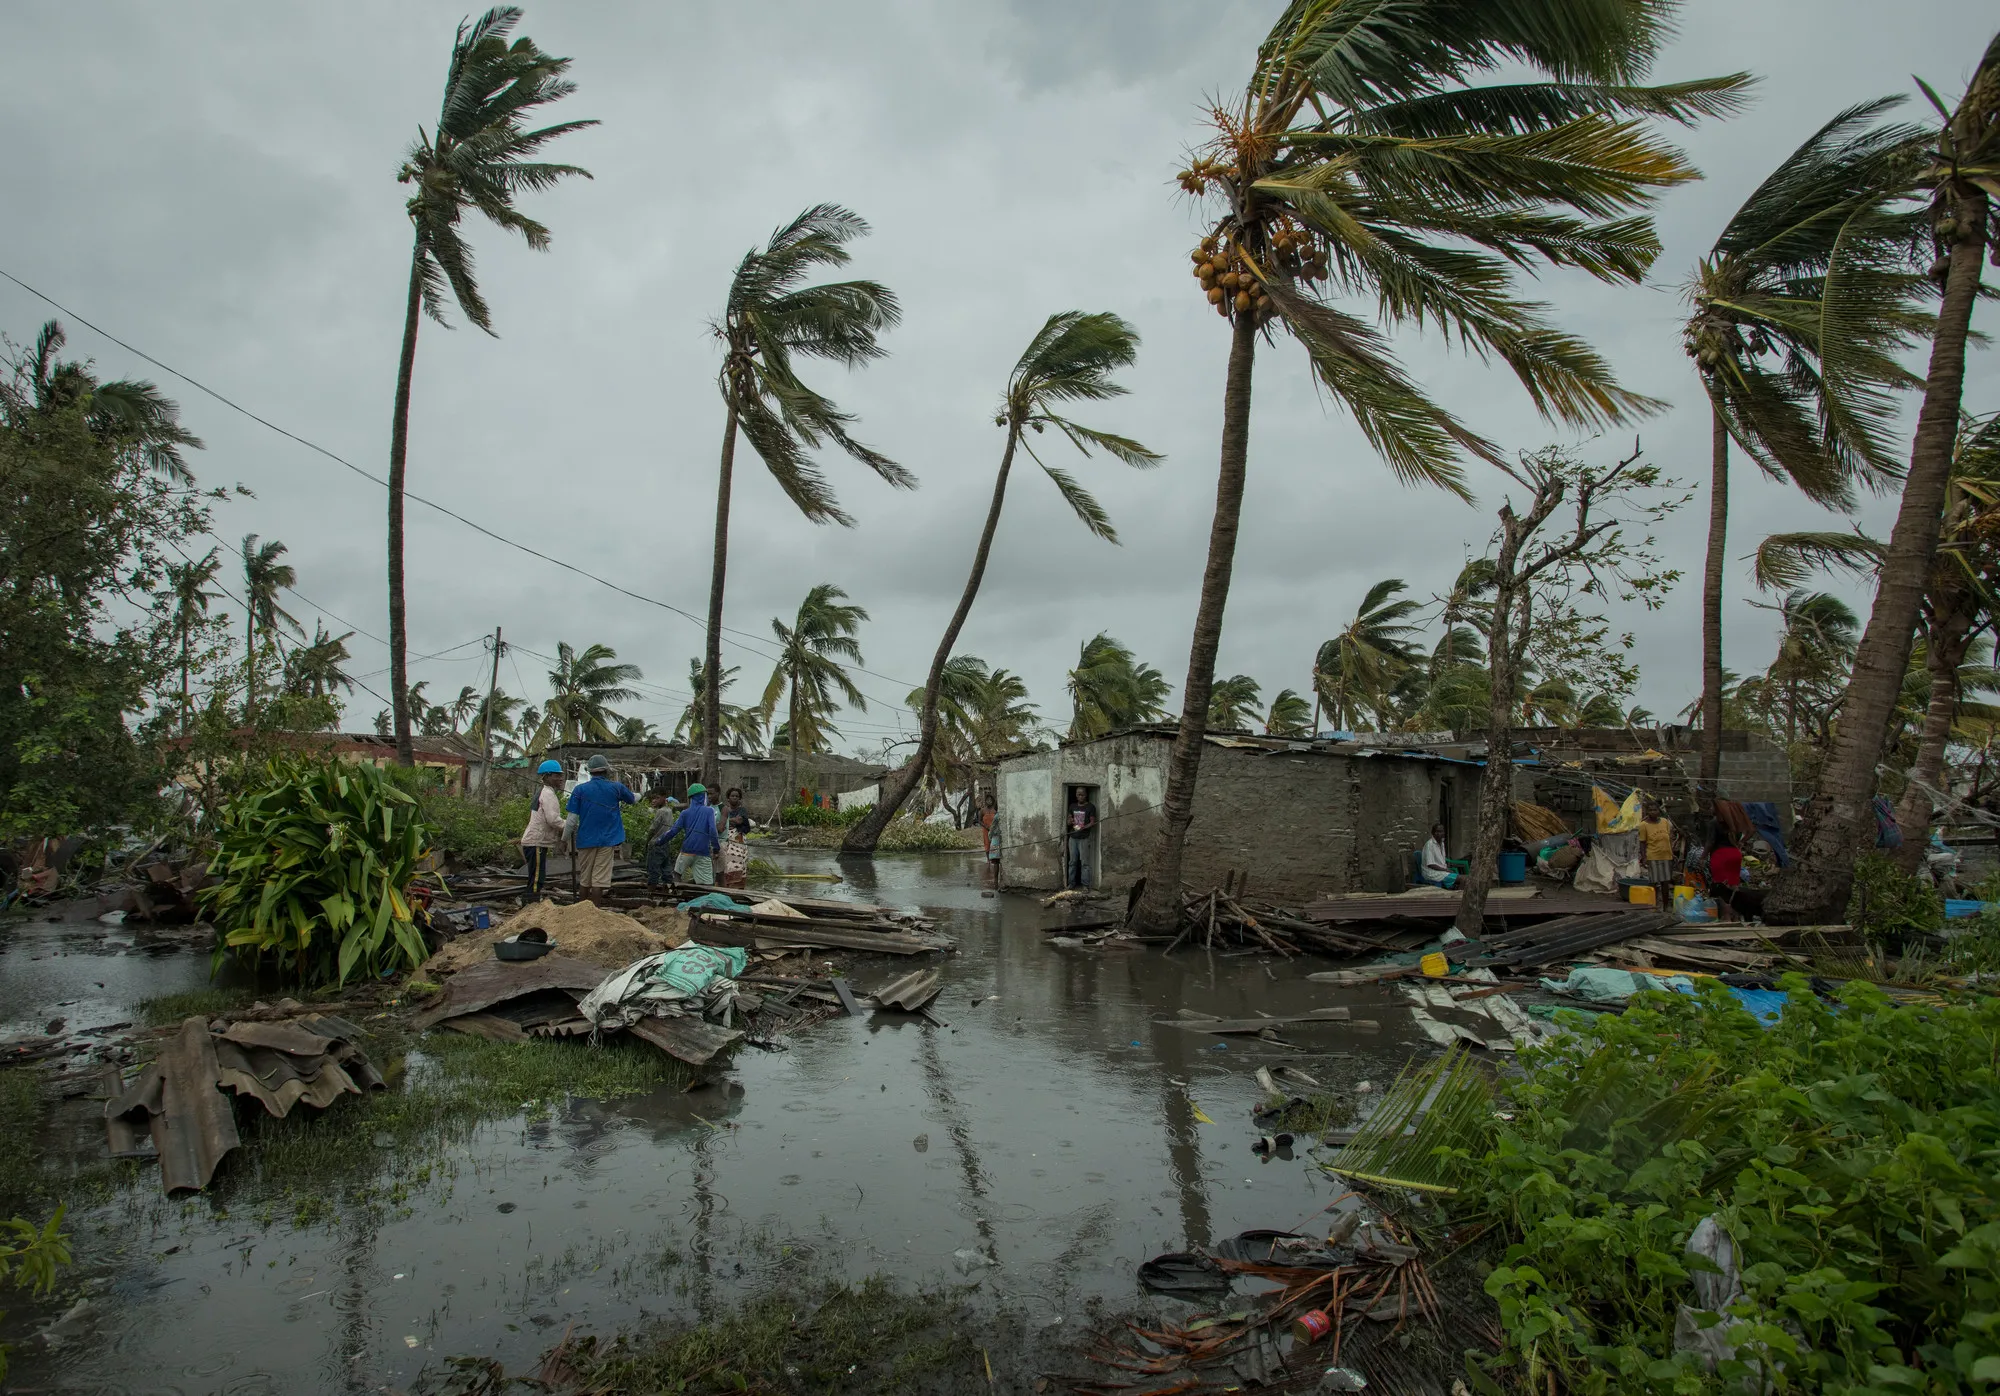 Beira, Mozambique after Cyclone Idai tore through the city. Photo: Josh Estey/CARE